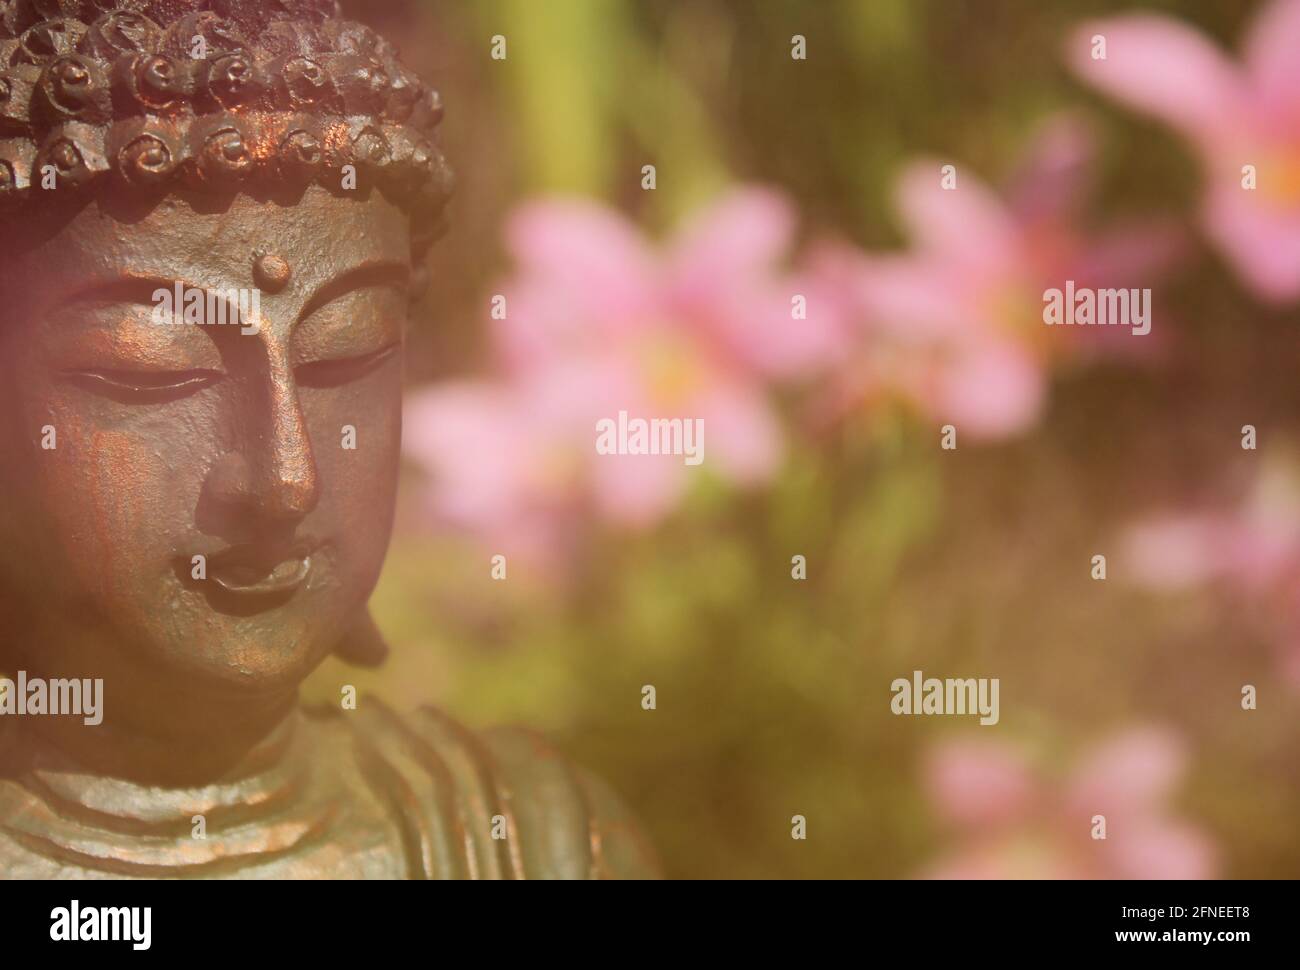 Statua di Buddha all'aperto in giardino con sfondo sfocato Foto Stock